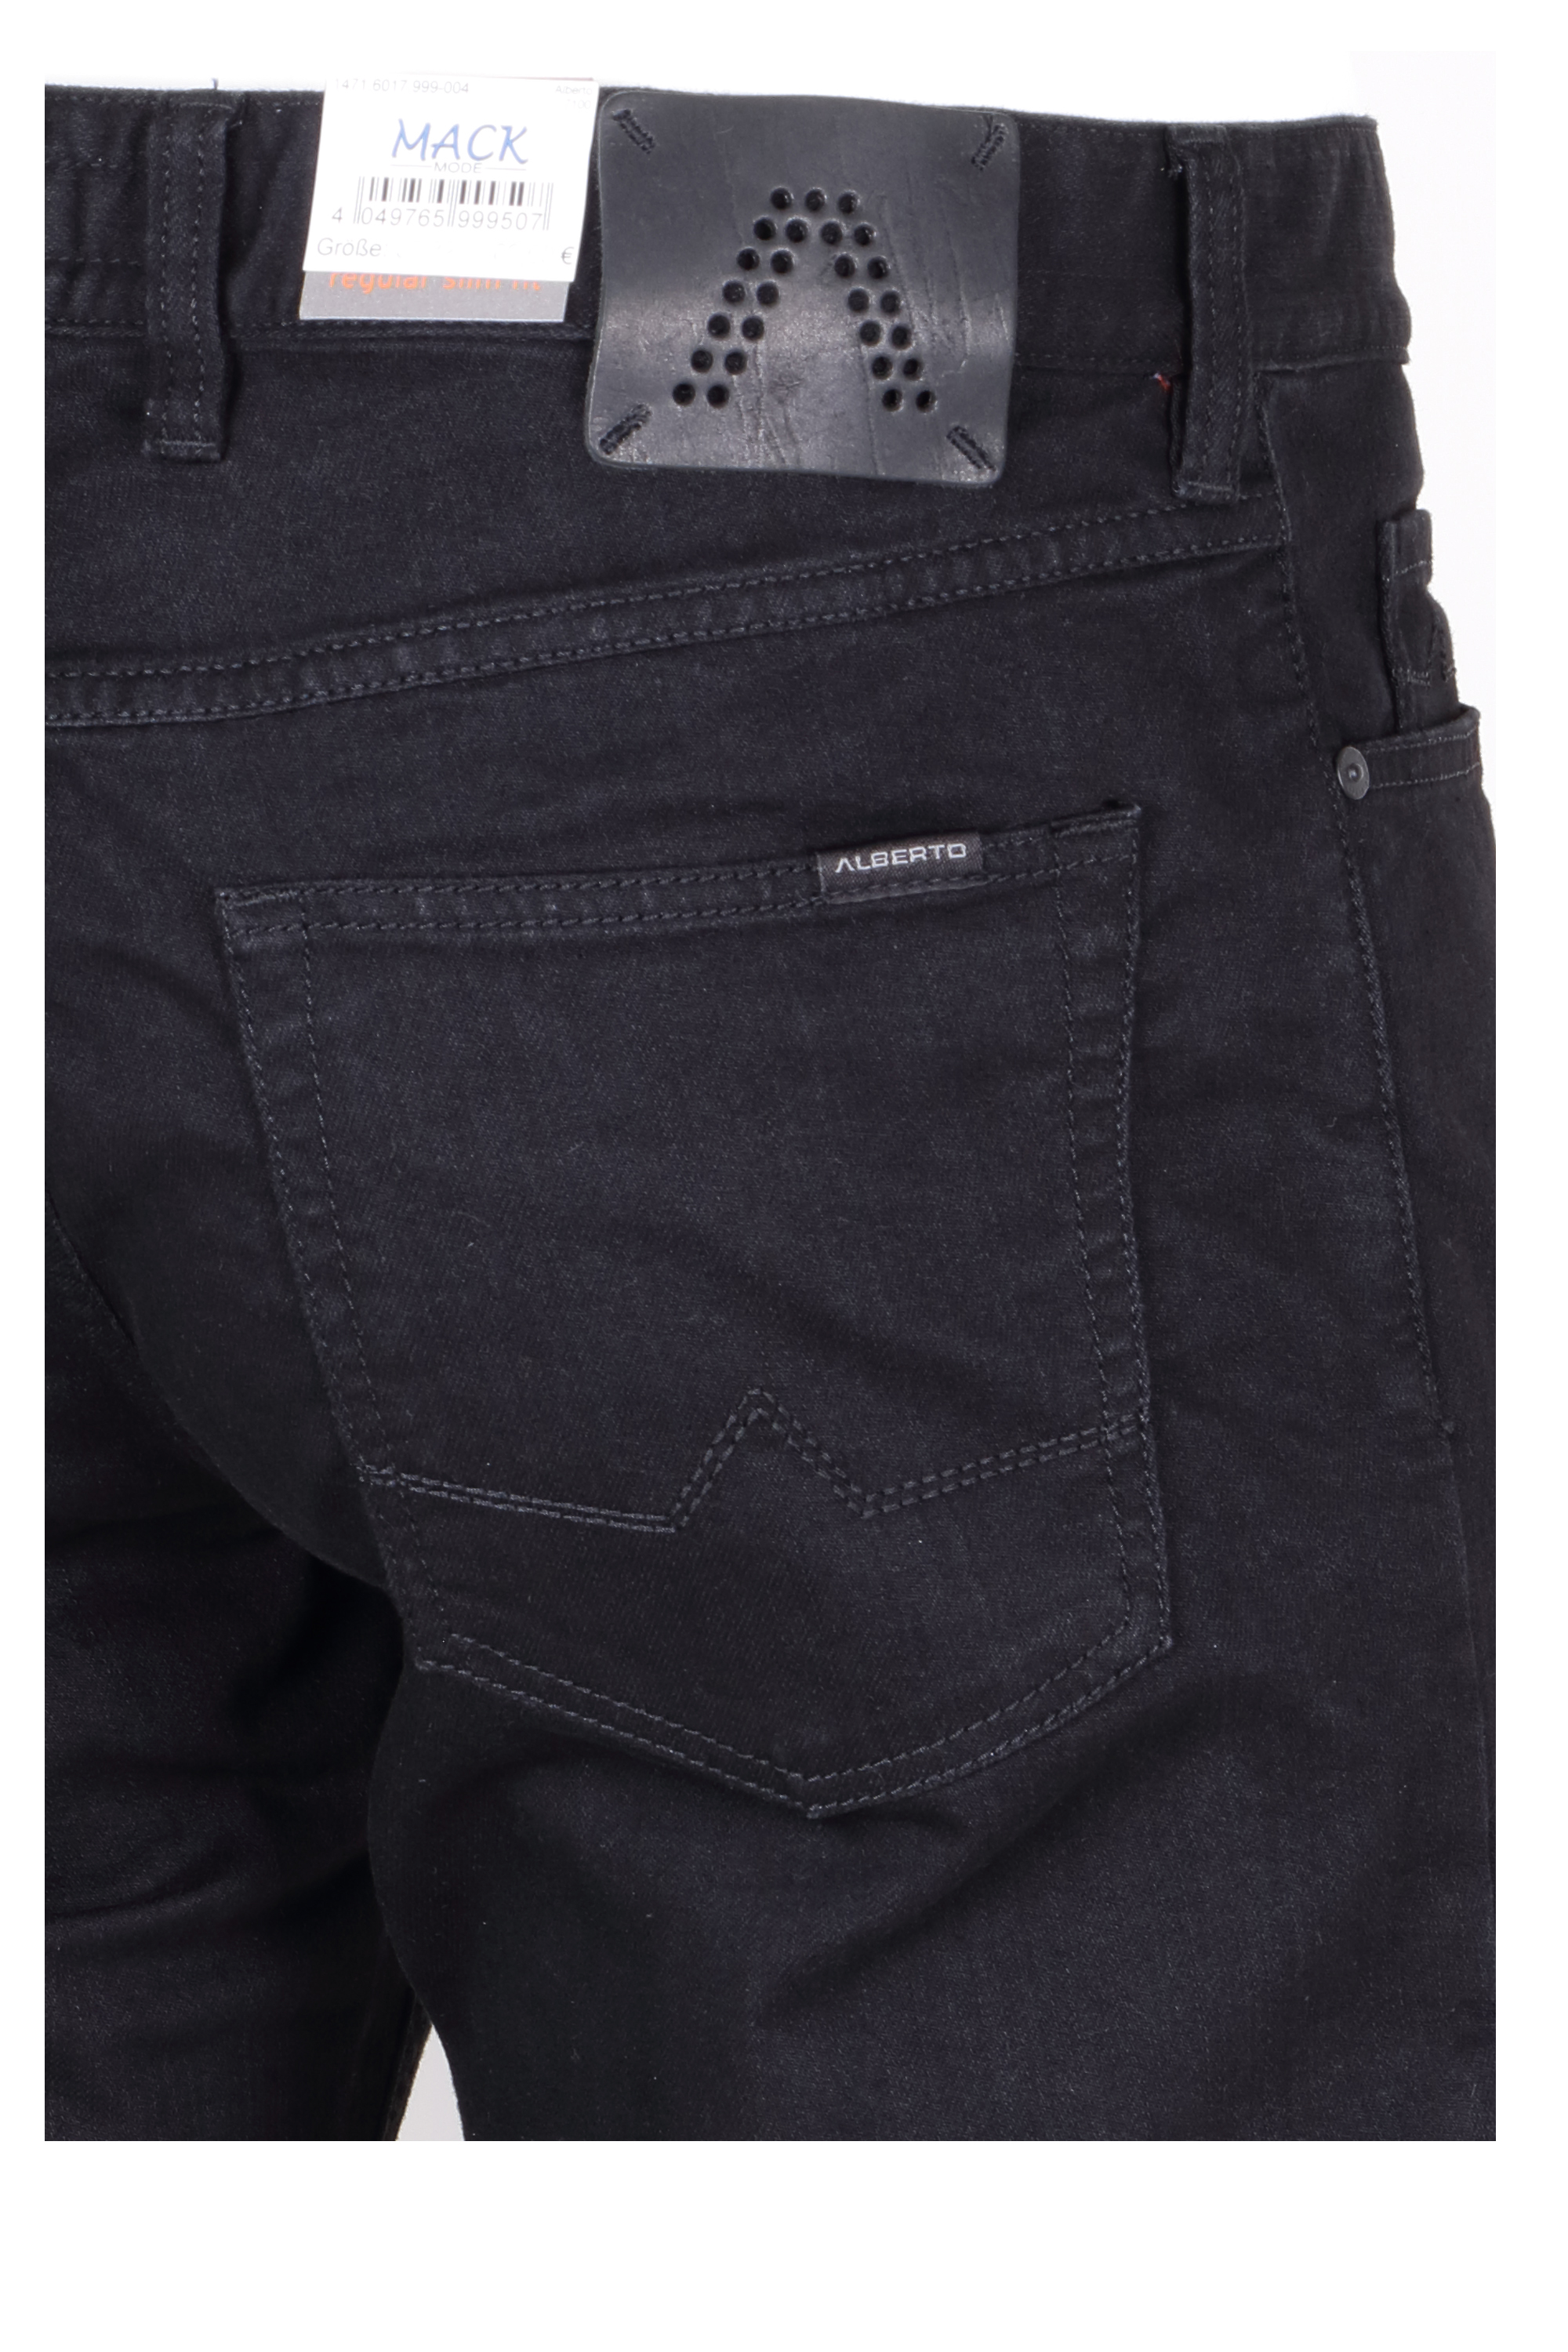 Alberto Herren Jeans Pipe regular fit - schwarz 40/34